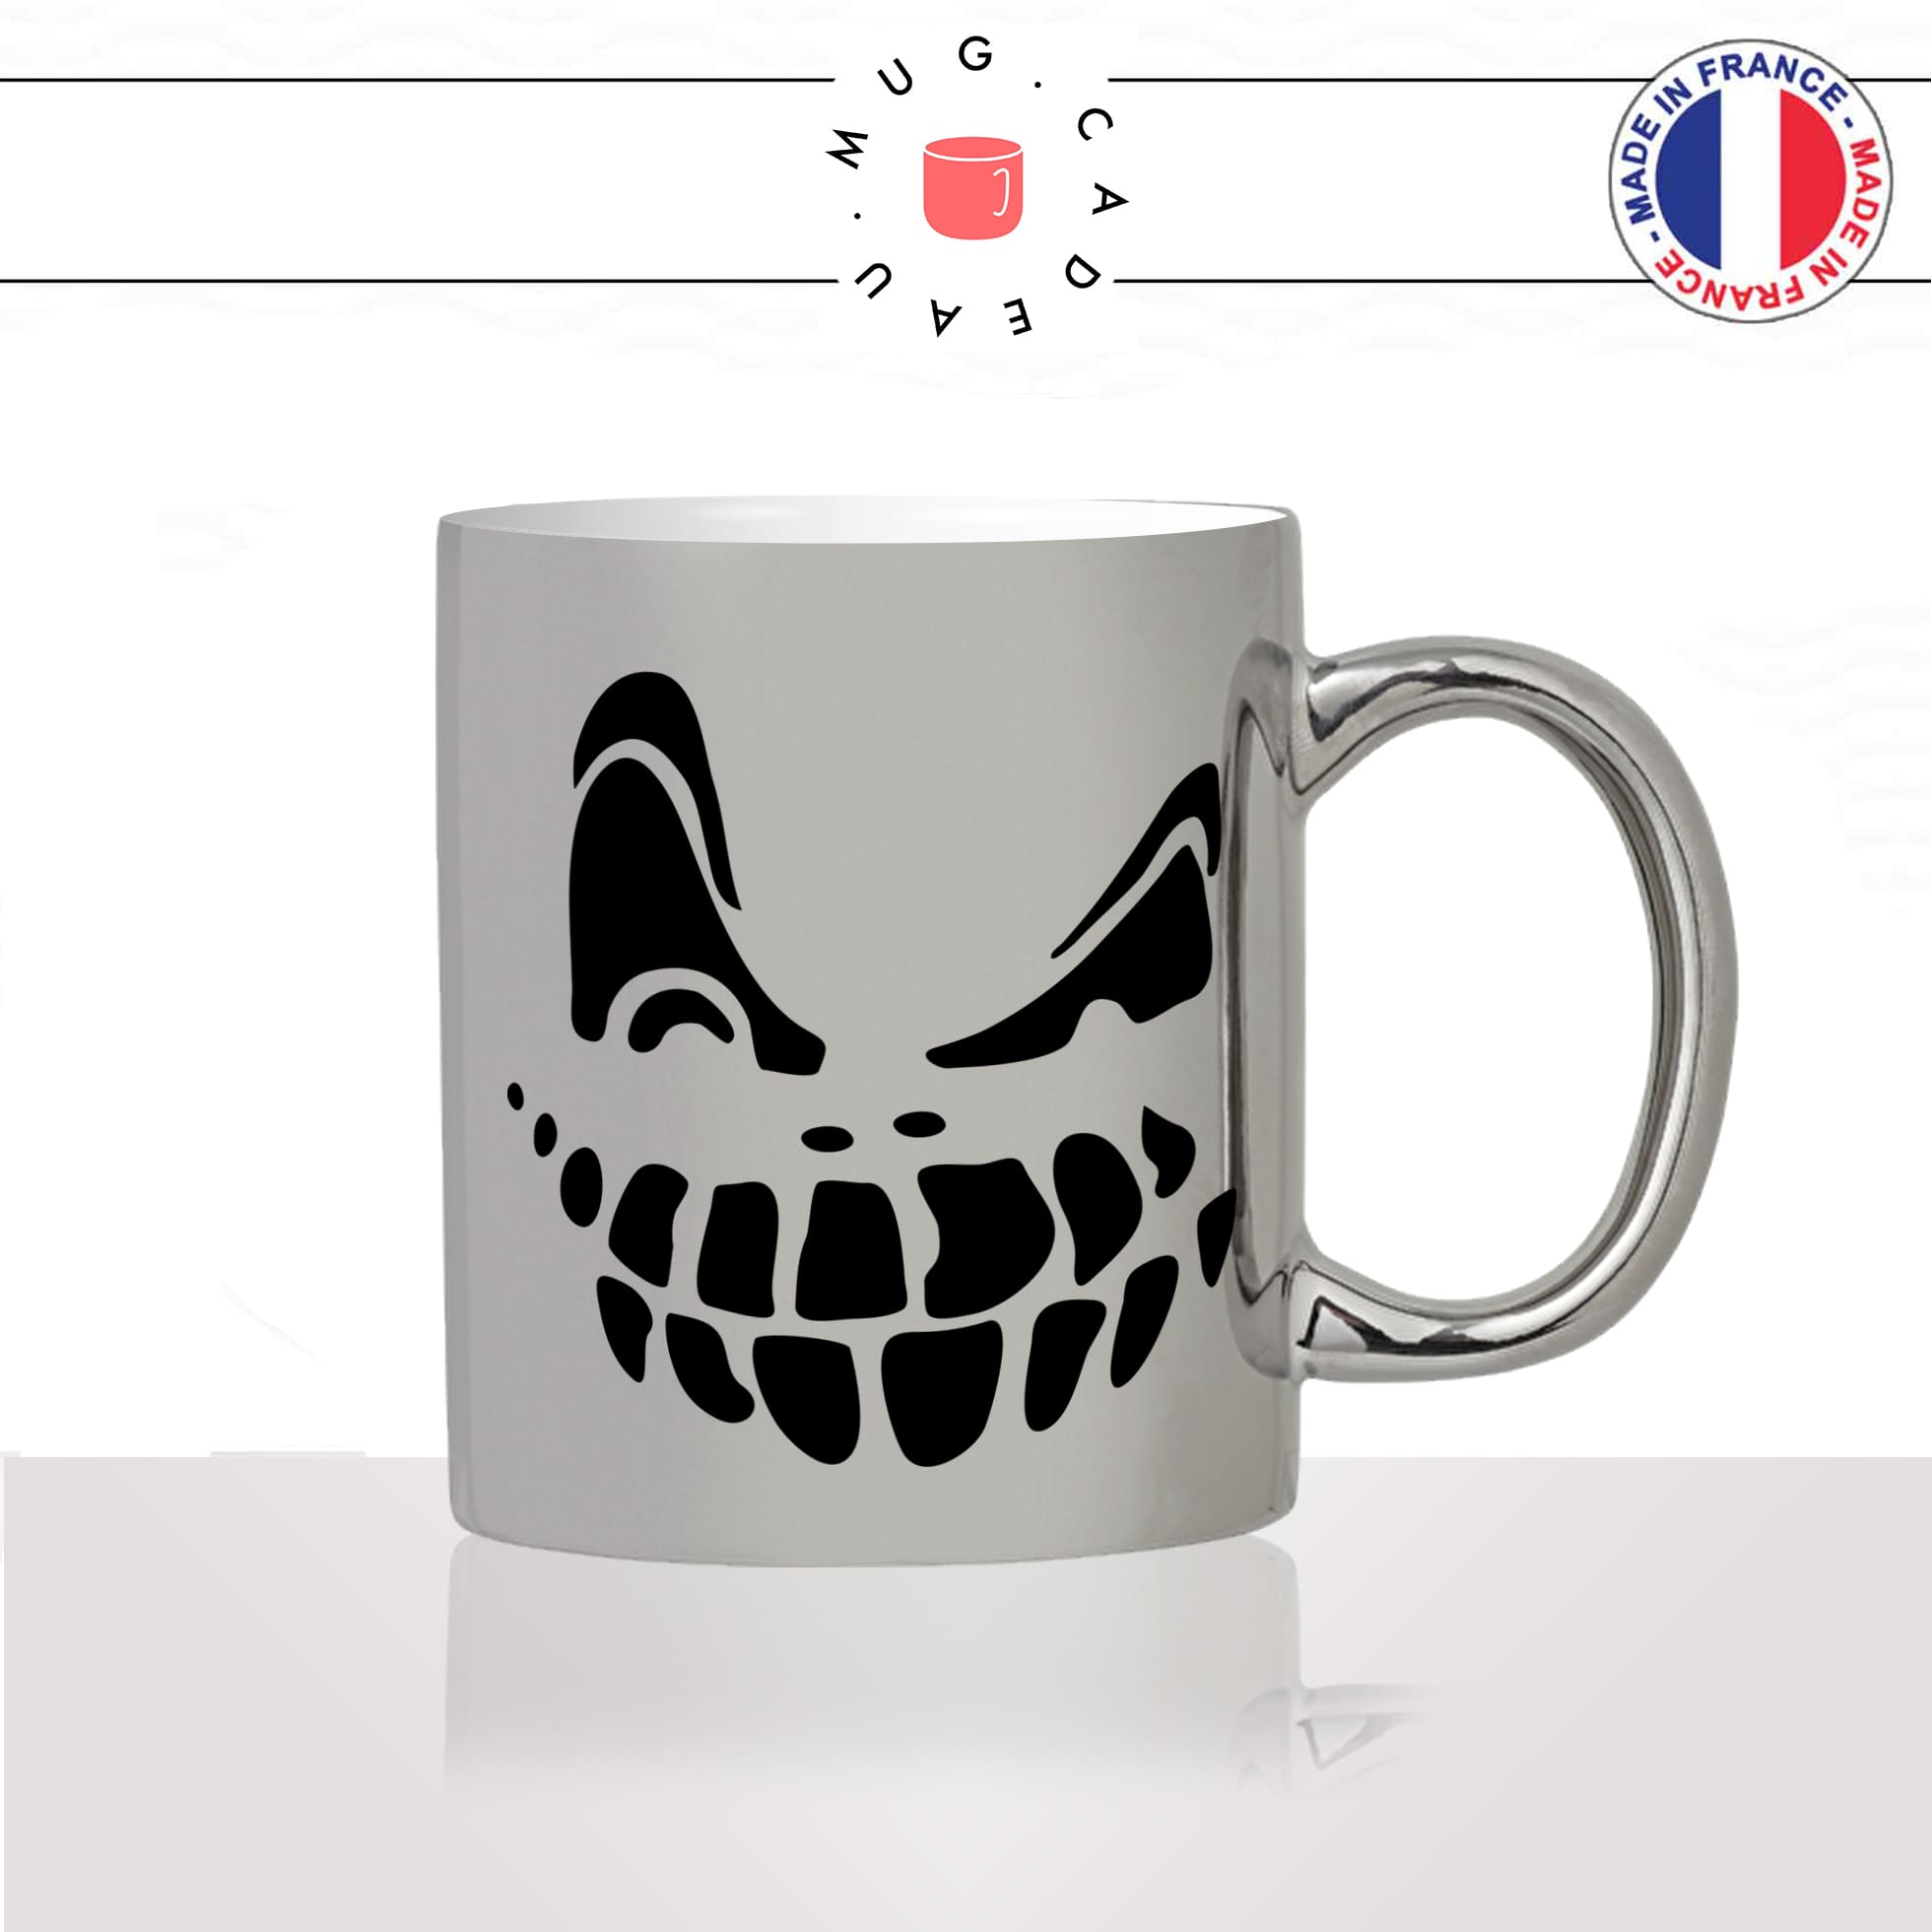 mug-tasse-argent-argenté-silver-halloween-monstre-peur-soir-nuit-dessin-noir-effrayant-humour-original-idée-cadeau-fun-cool-café-thé2